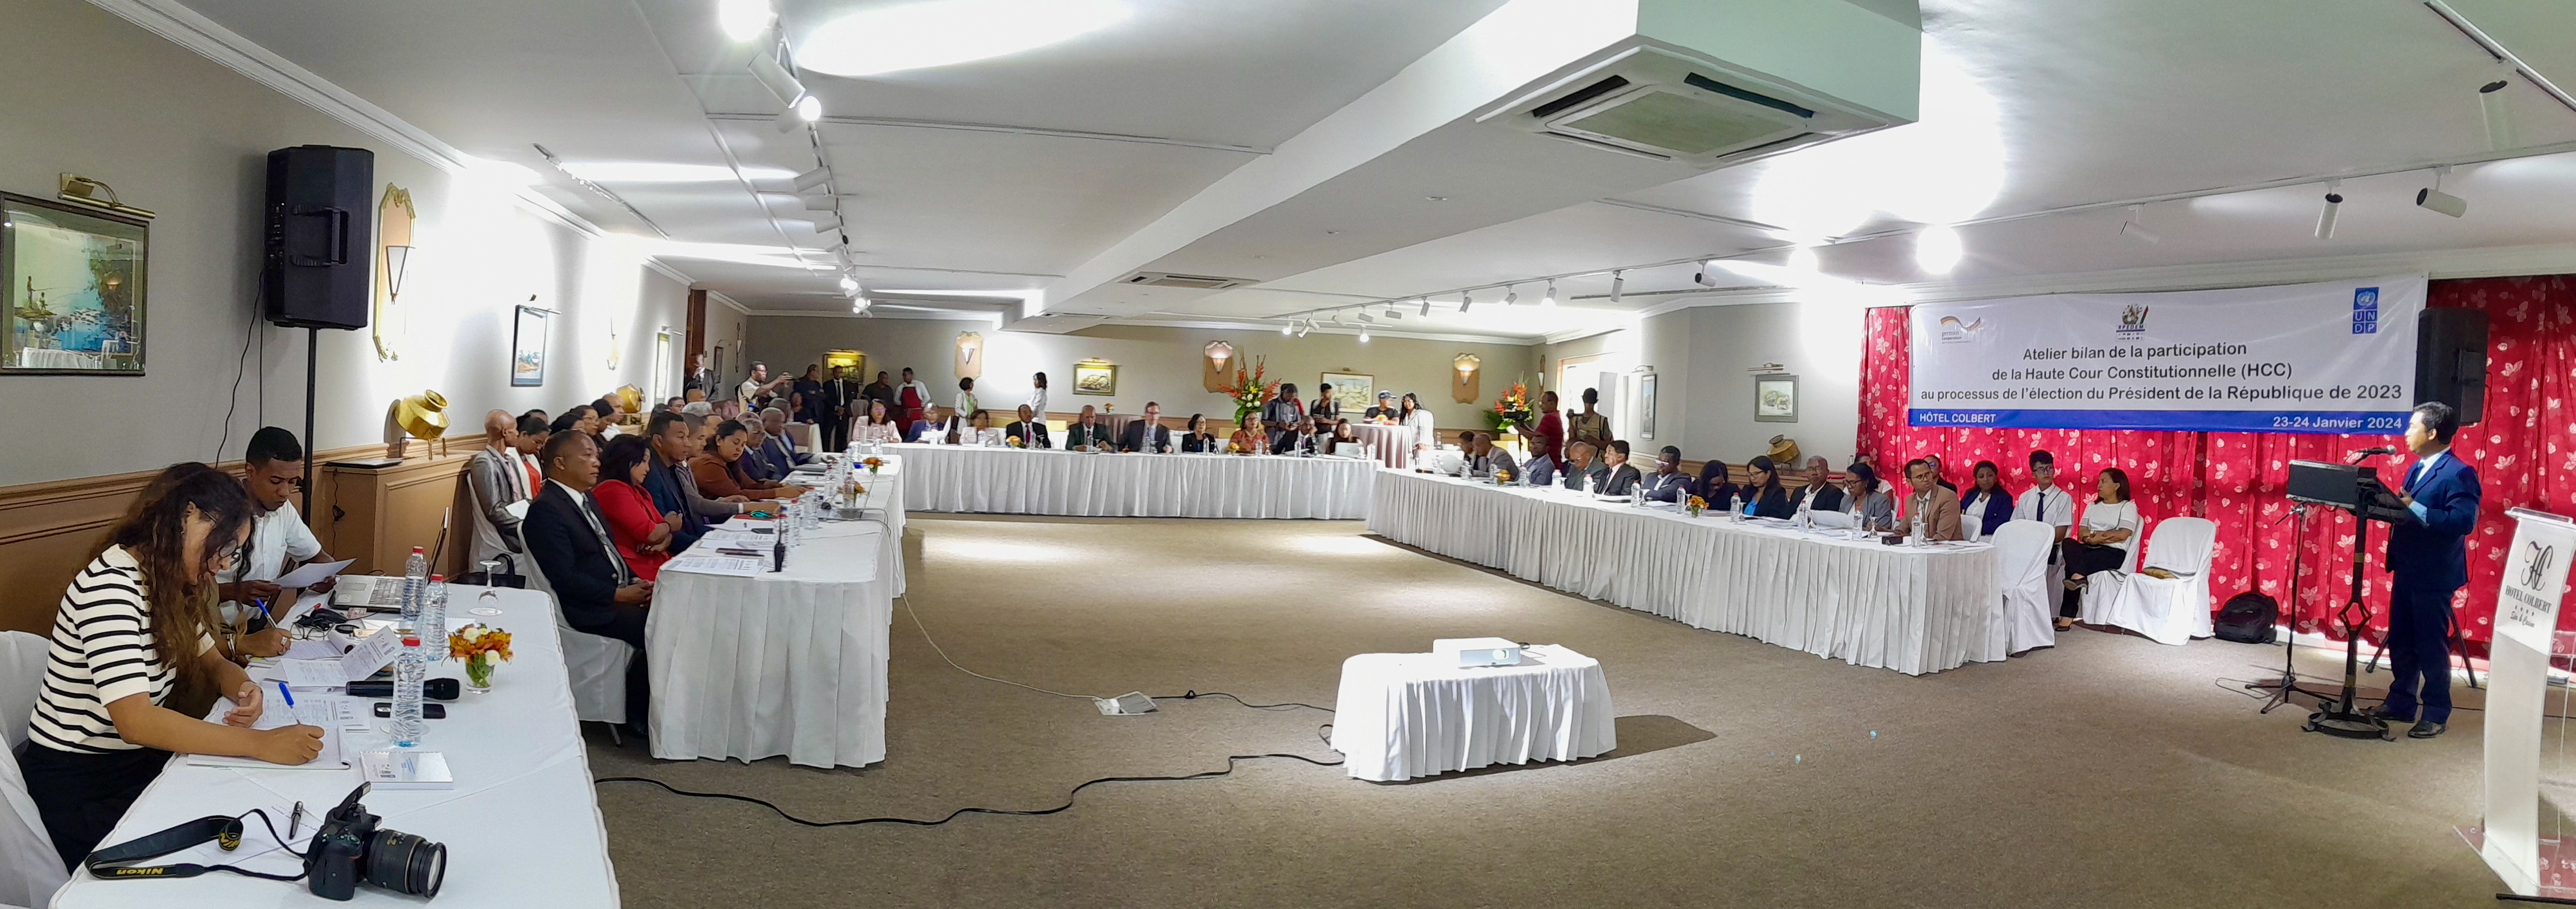 Les participants à l'atelier bilan de la HCC sur sa participation au processus électoral de l'élection présidentielle décembre 2023